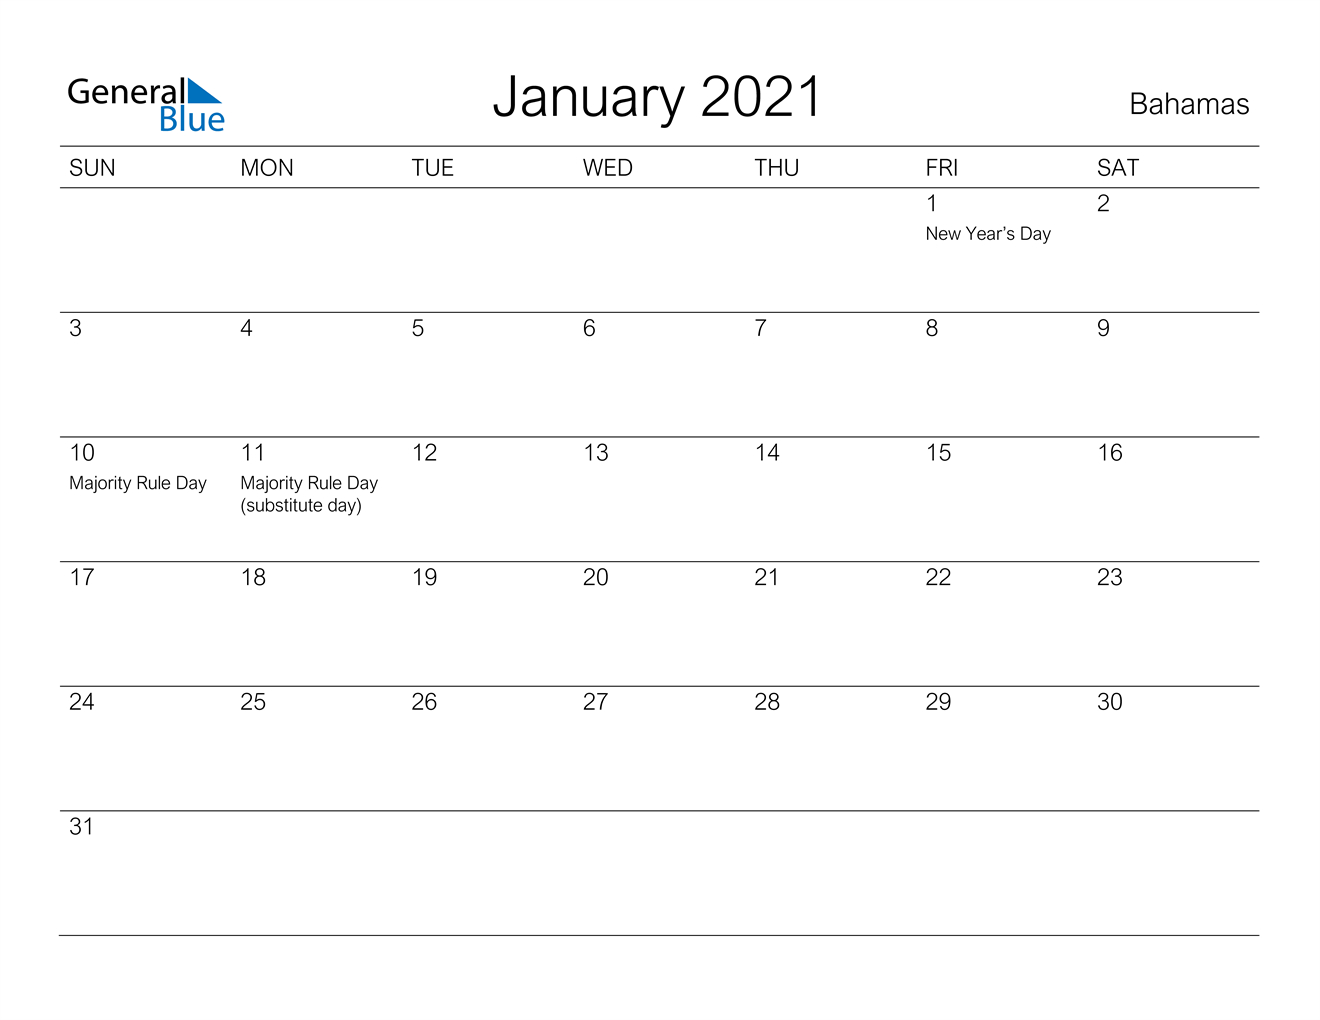 January 2021 Calendar - Bahamas-Beta Calendars 2021